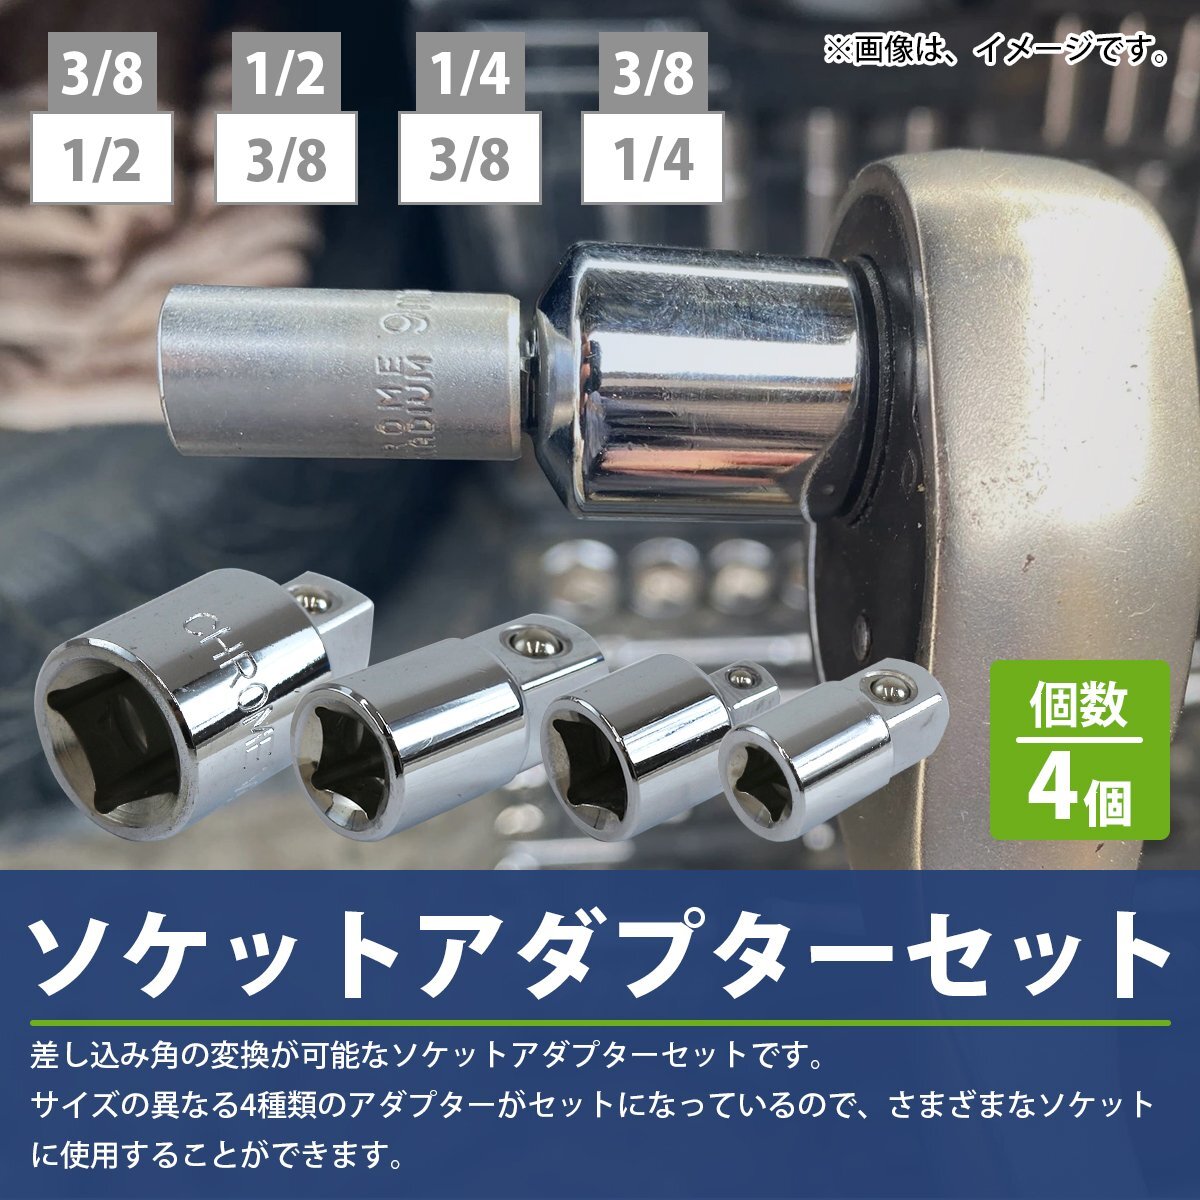 【新品即納】 ソケット 変換 アダプター 4点 セット ラチェット ハンドル レンチ 差込角 1/4 3/8 1/2 3/4 6.3 9.5 12.7 19 mm ジョイント_tool-i-117-xx-01-a